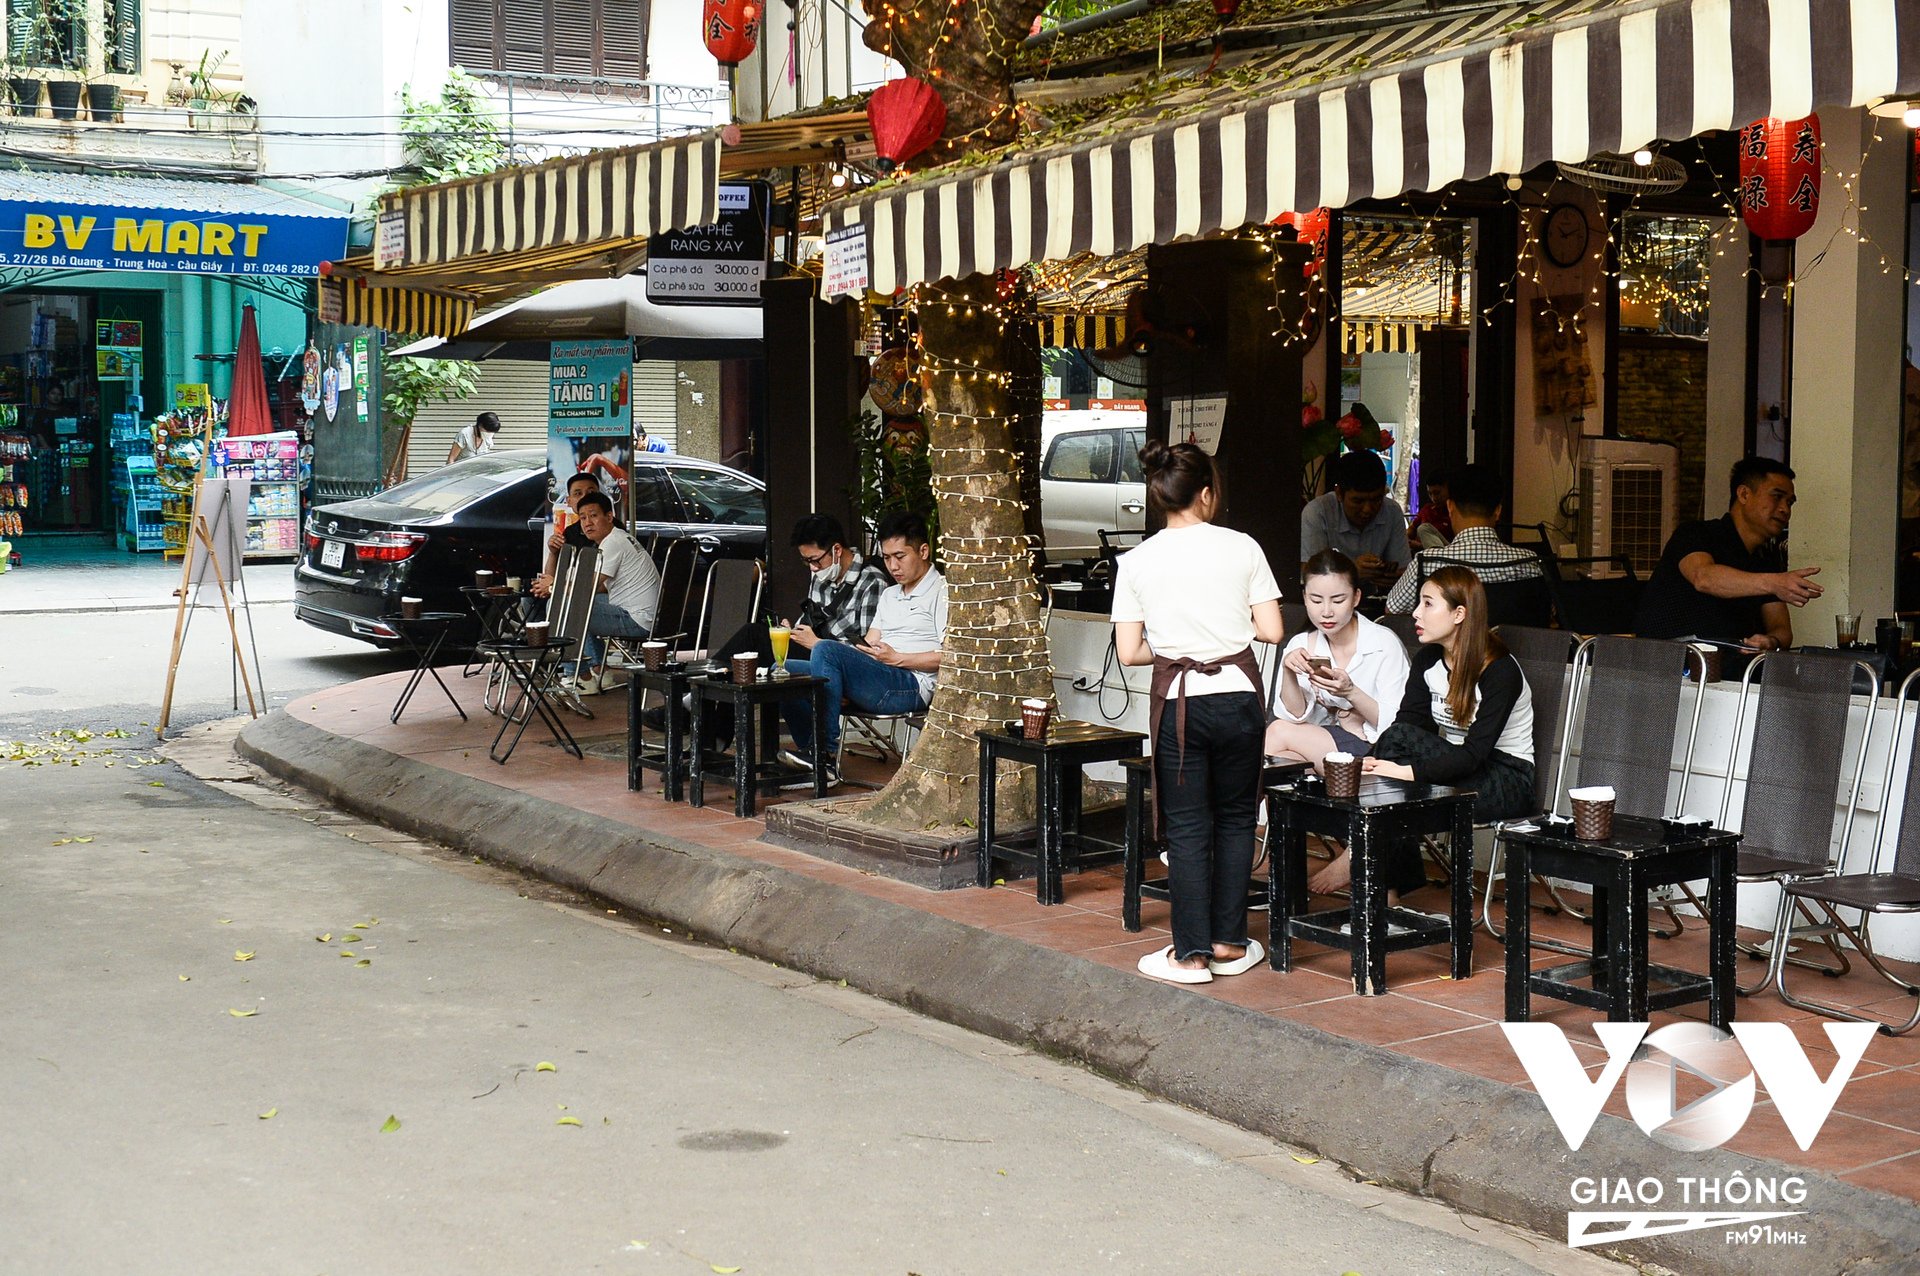 Cũng trong buổi ra quân, Ban Chỉ đạo 197, phường Trung Hòa đã xử lý cửa hàng kinh doanh cà phê, đồ uống kê bàn ghế lấn chiếm vỉa hè.